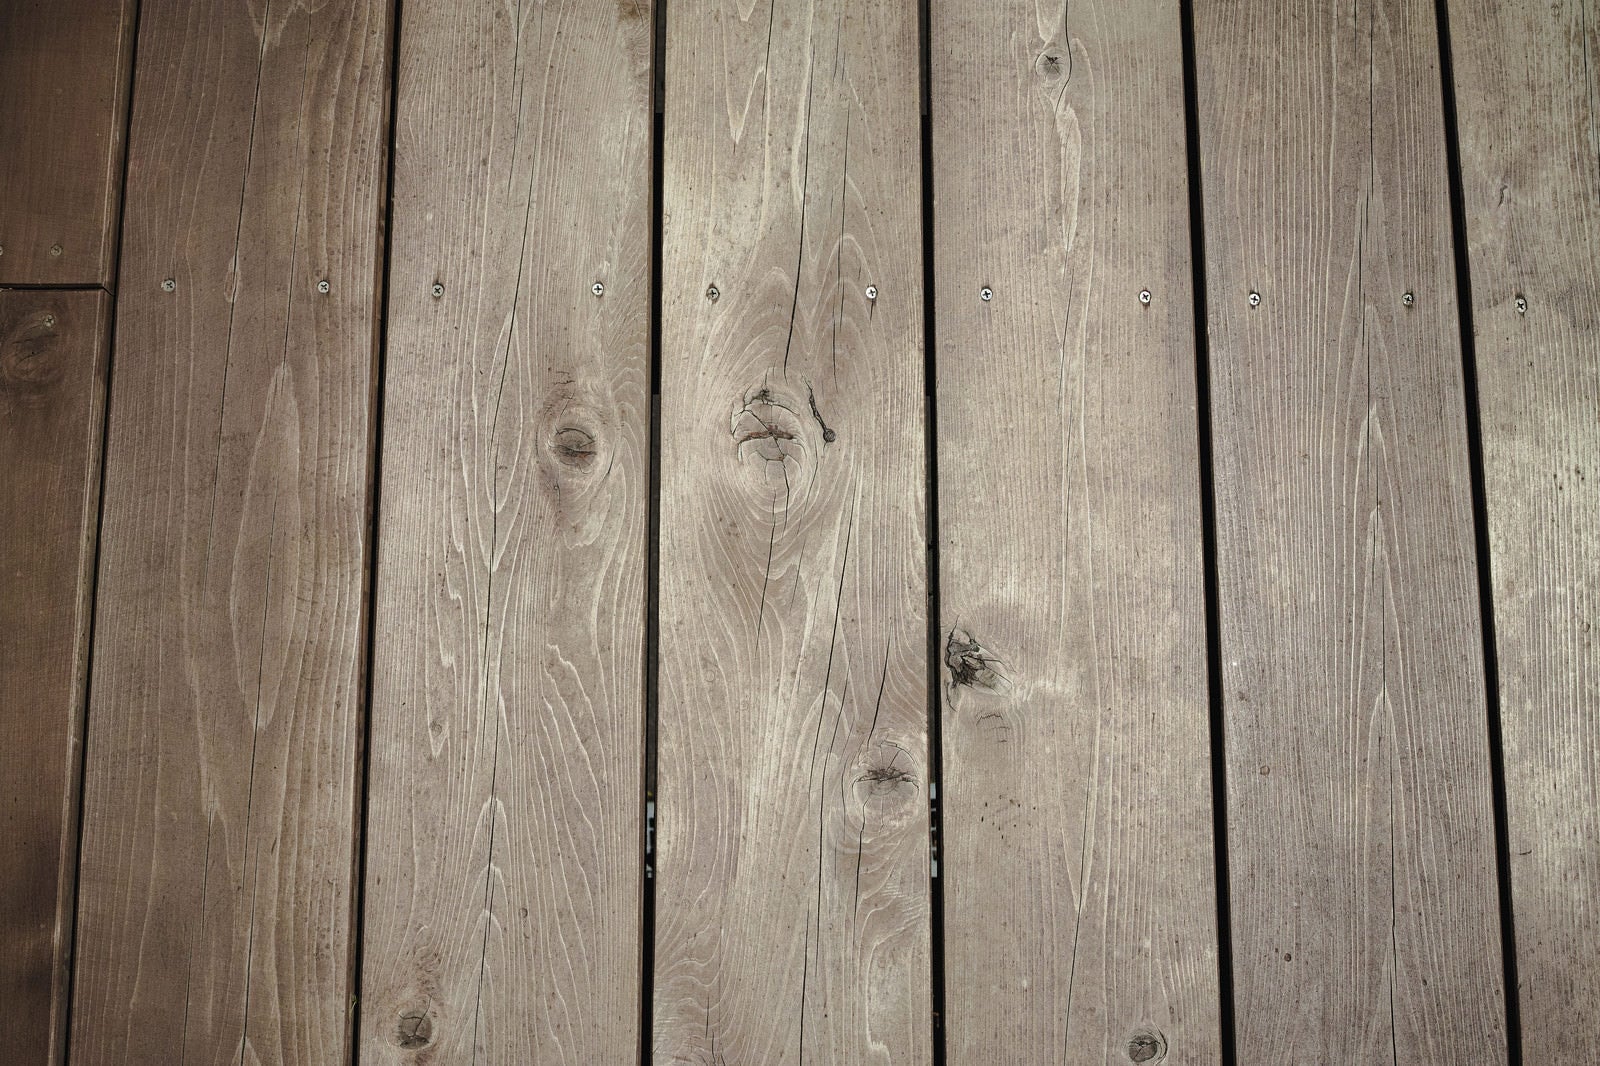 「床に敷いた板のテクスチャー」の写真